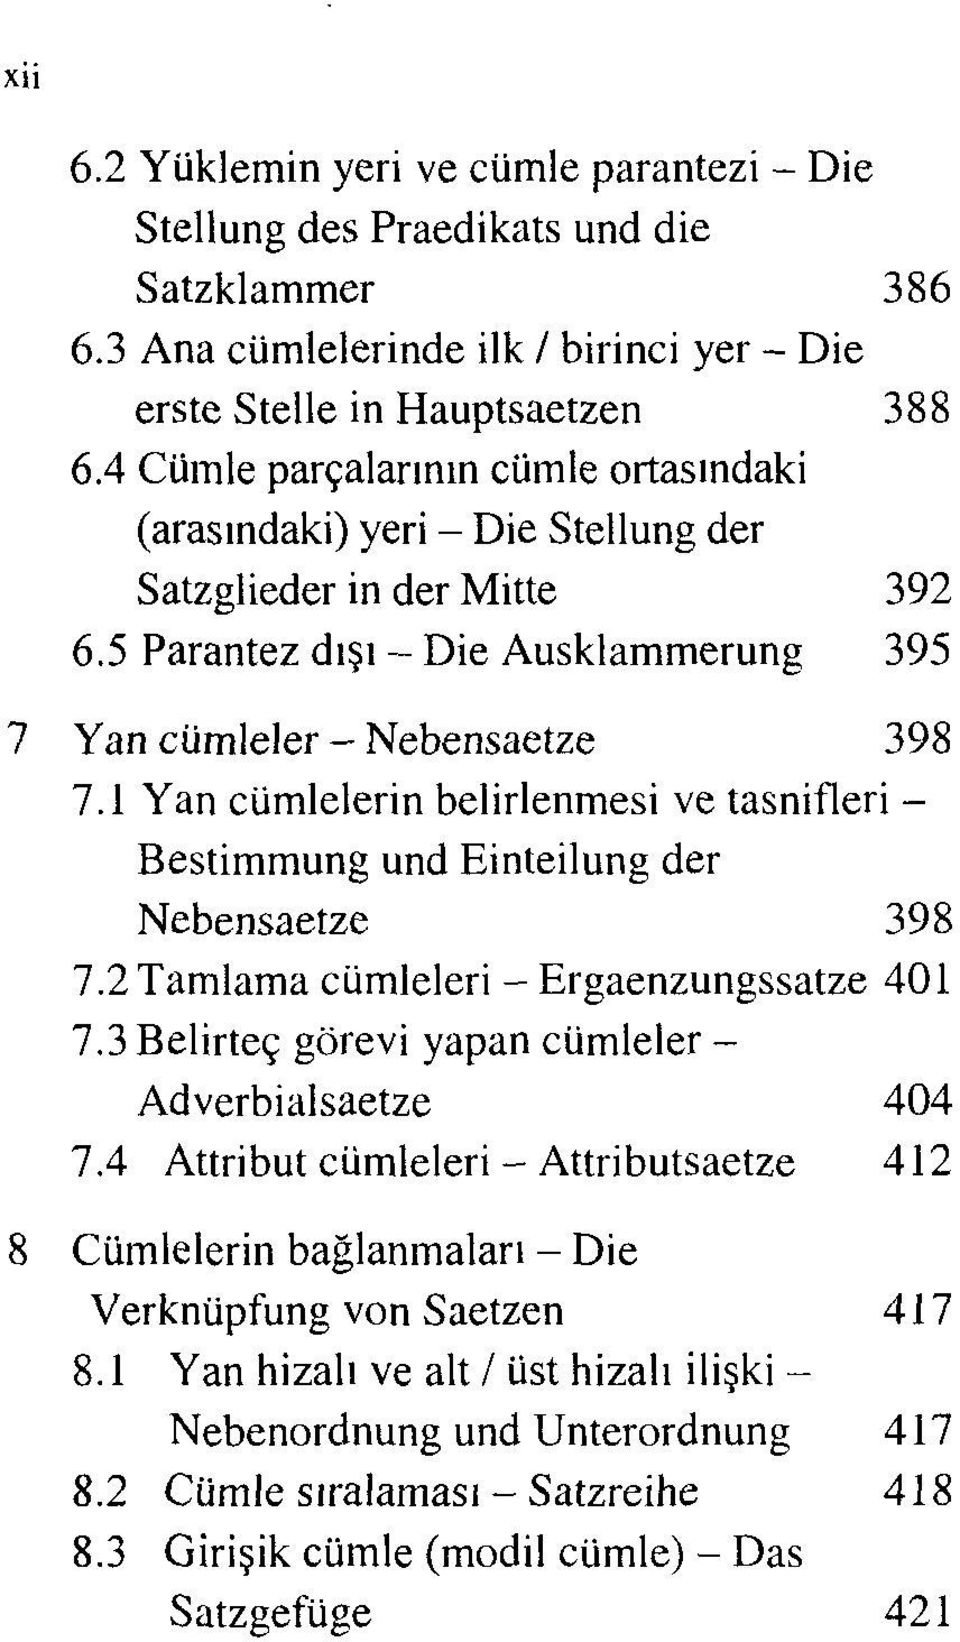 1 Yan cümlelerin belirlenmesi ve tasnifleri - Bestimmung und Einteilung der Nebensaetze 398 7.2 Tamlama cümleleri - Ergaenzungssatze 401 7.3 Belirteç görevi yapan cümleler - Adverbialsaetze 404 7.